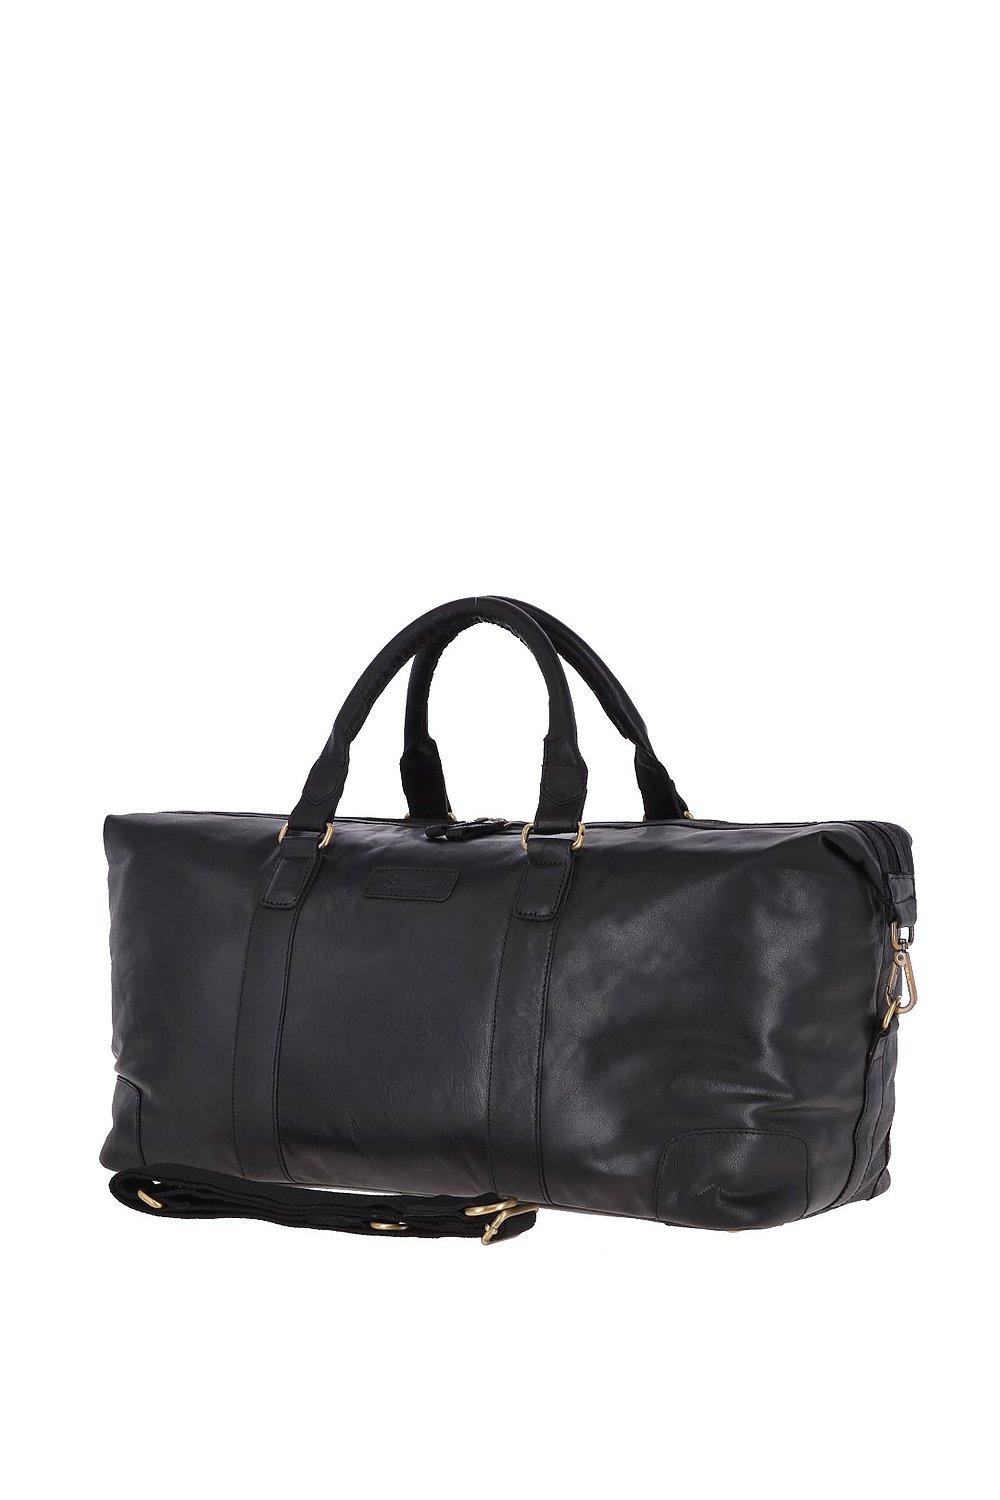 Большая винтажная дорожная сумка из натуральной кожи Ashwood Leather, черный сумка дорожная шарпей натуральная кожа плечевой ремень черный